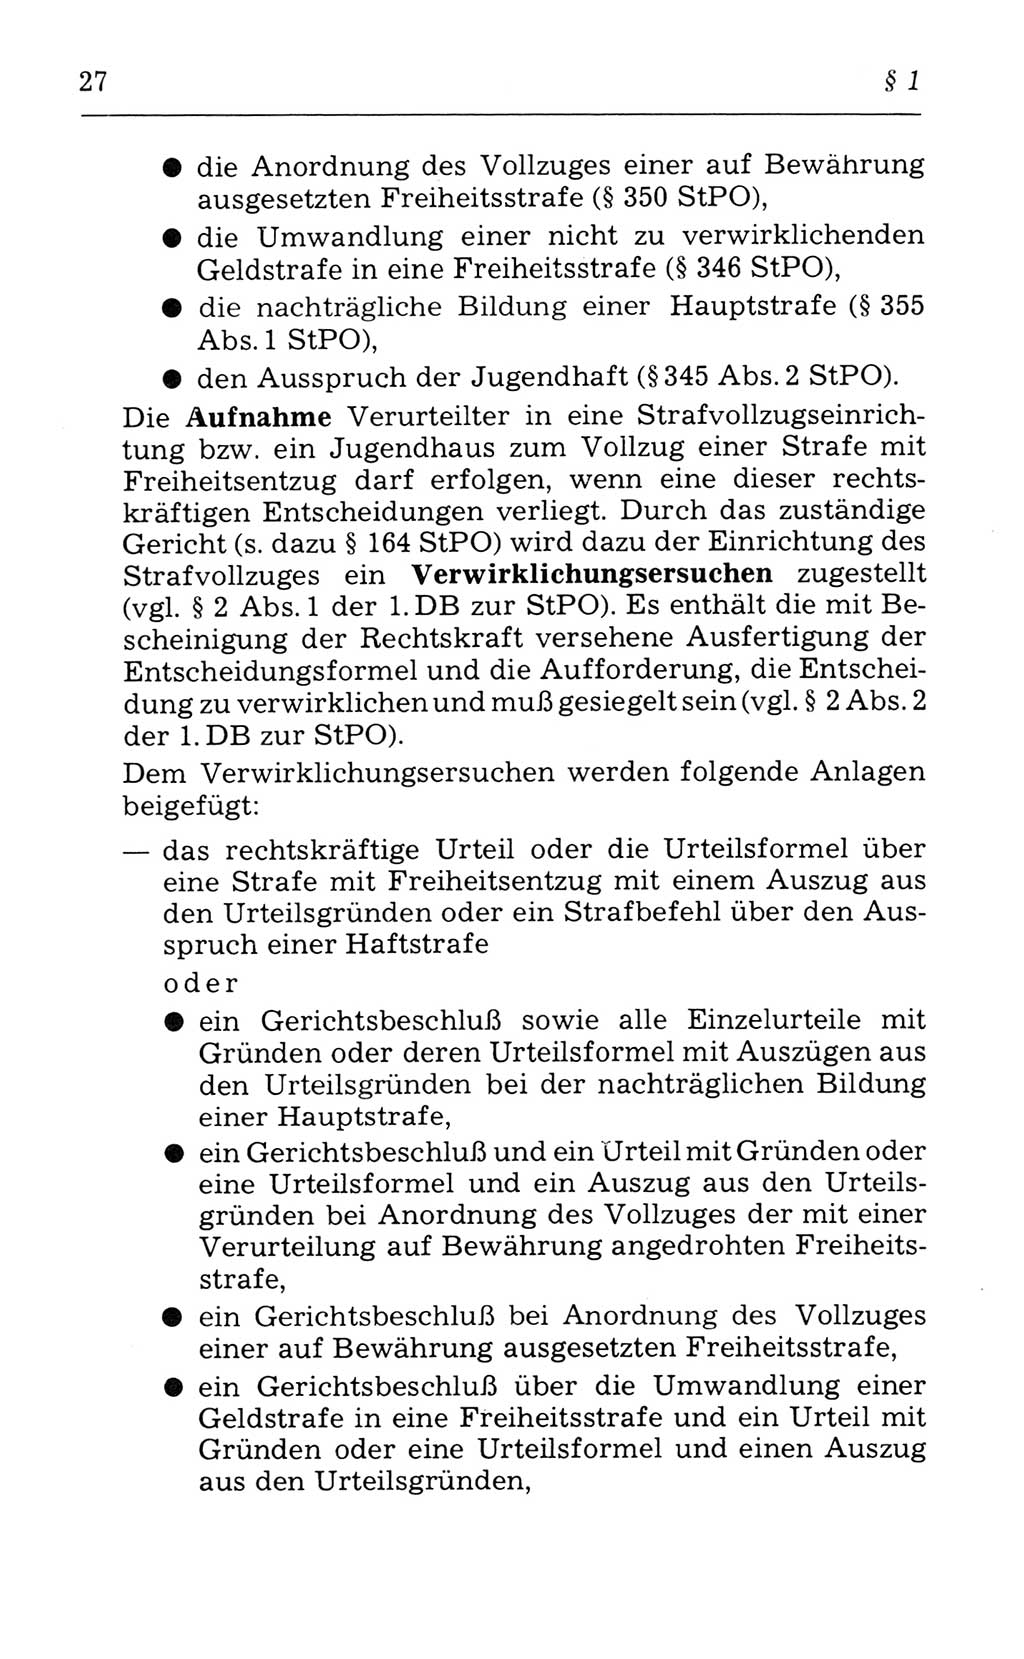 Kommentar zum Strafvollzugsgesetz [(StVG) Deutsche Demokratische Republik (DDR)] 1980, Seite 27 (Komm. StVG DDR 1980, S. 27)